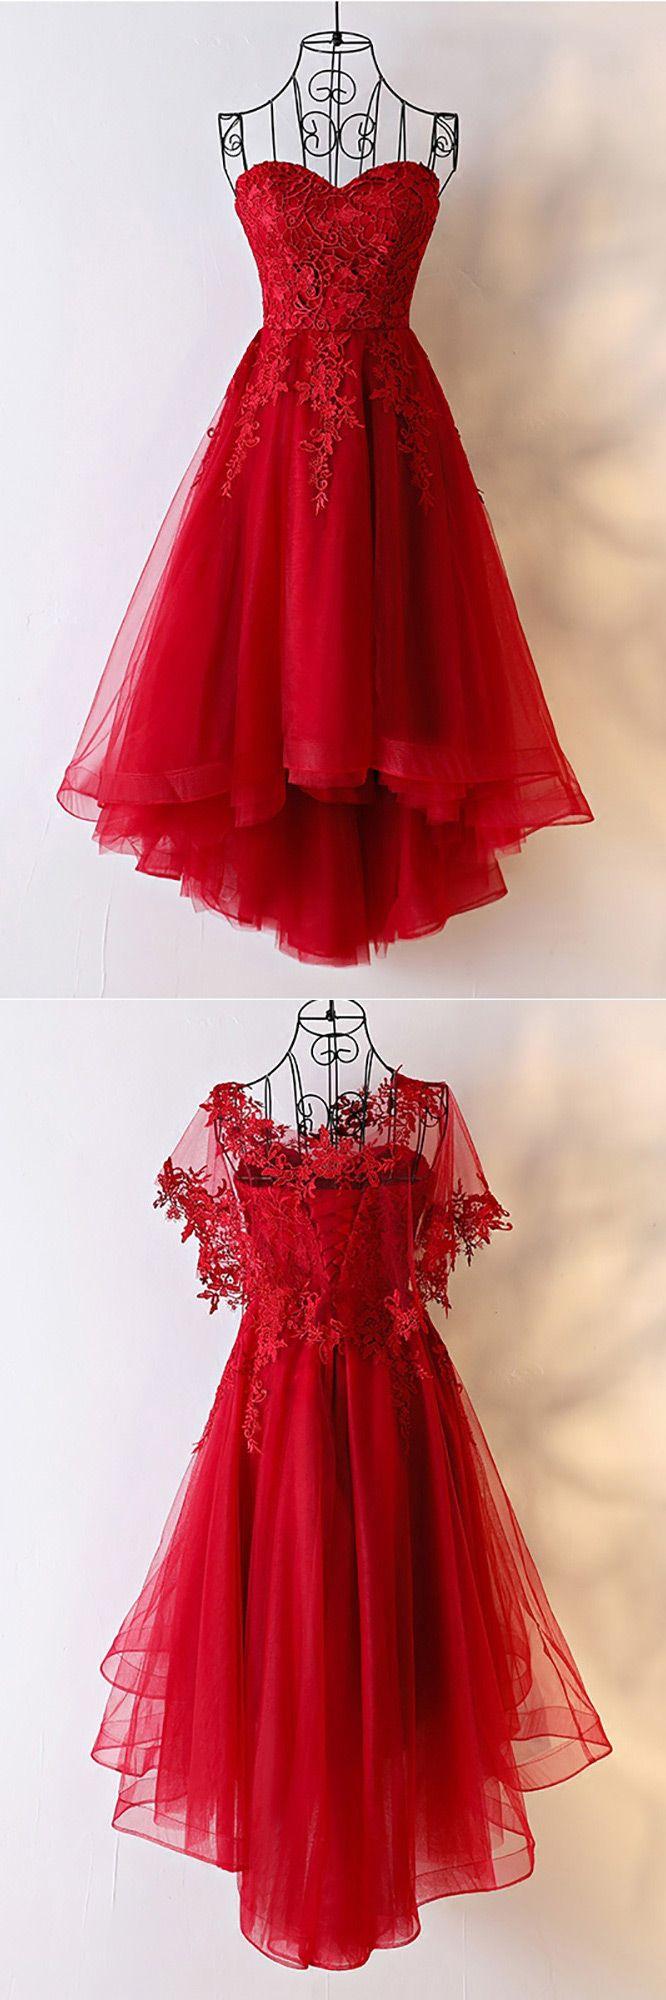 زفاف - Unique Burgundy High Low Tulle Cheap Prom Dress With Appliques - $99 #MYX18200 - SheProm.com